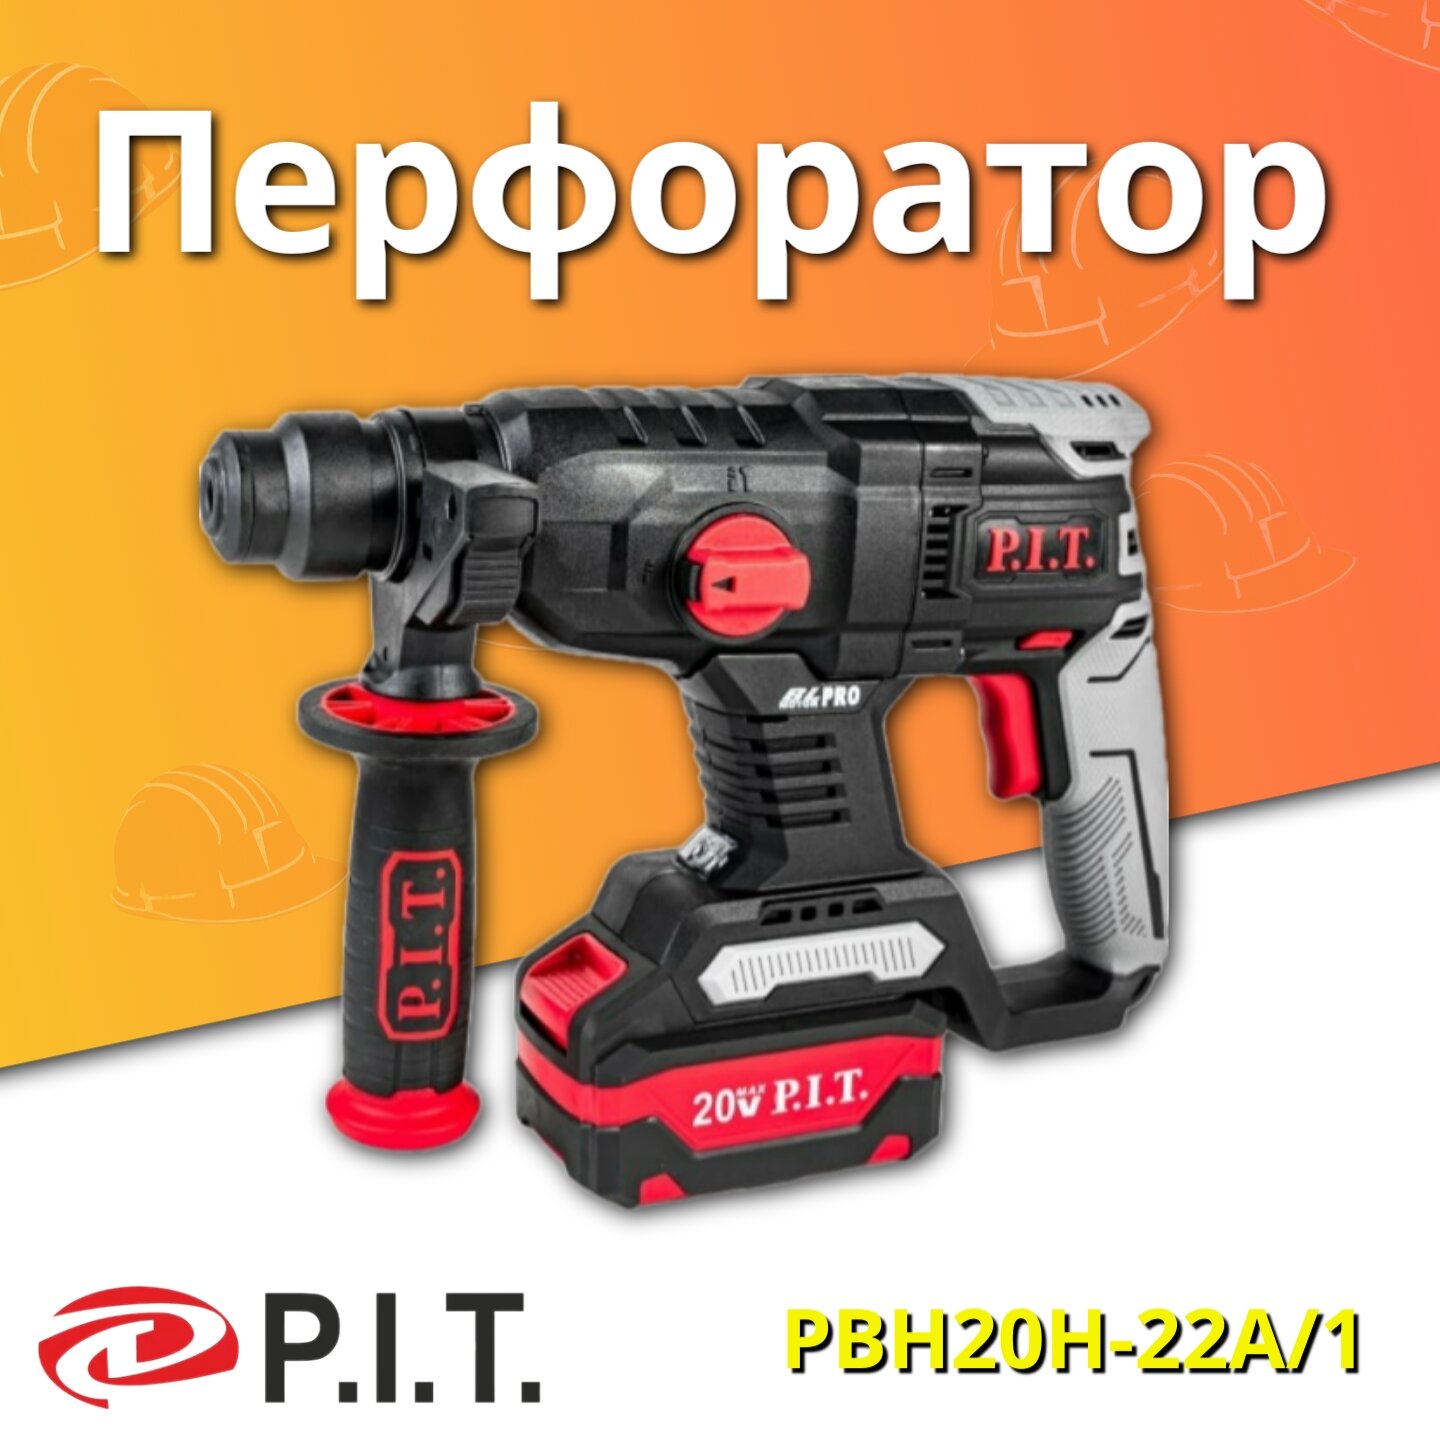 Перфоратор аккумуляторный P.I.T. PBH20H-22A/1, 20 Вт